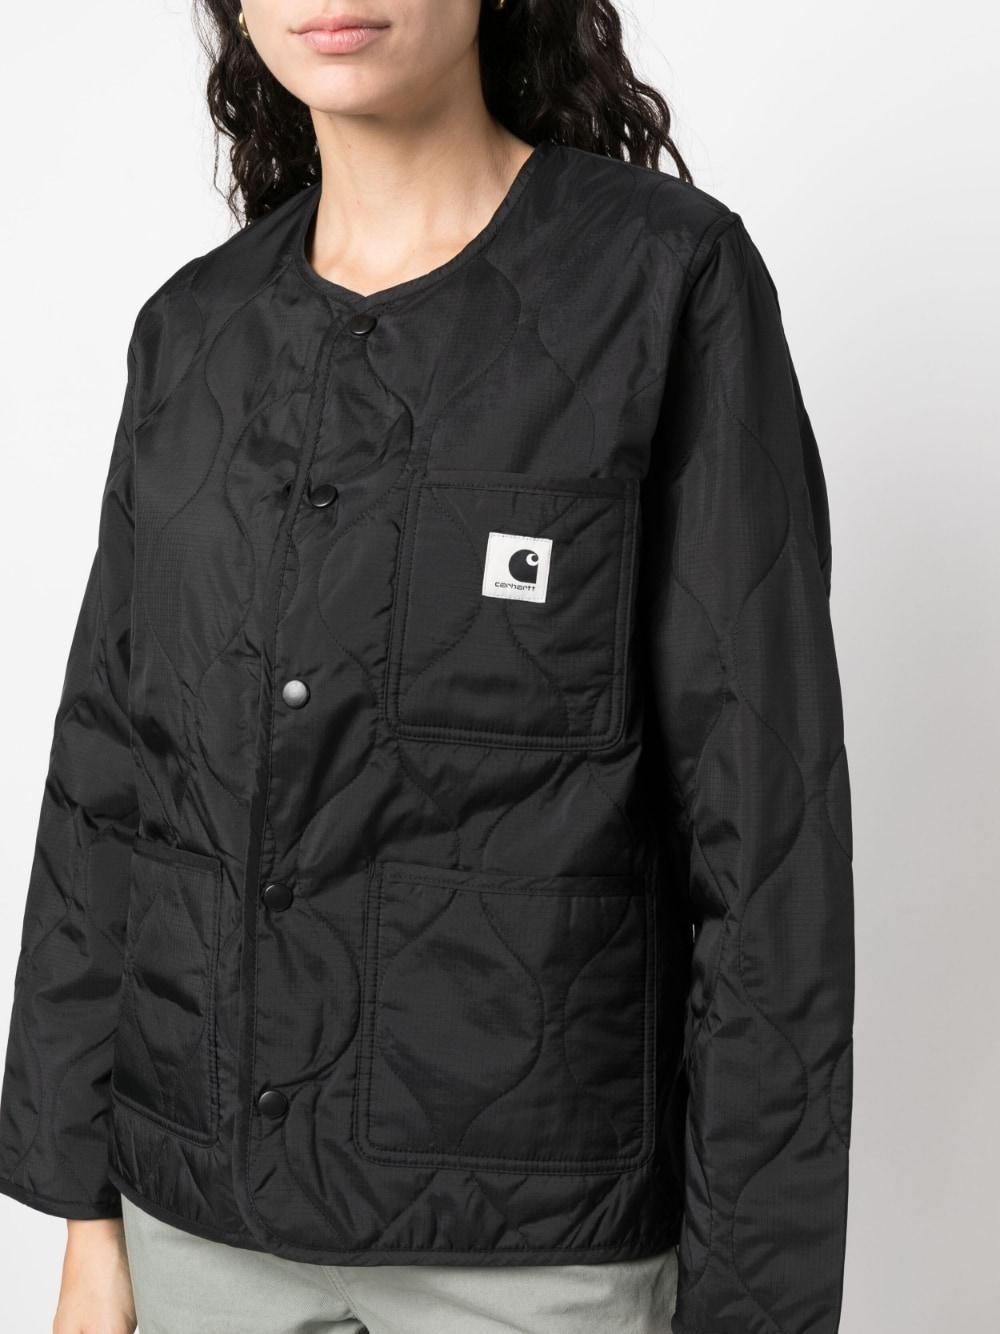 Carhartt WIP W' Skyler Liner Jacket in Black | Lyst